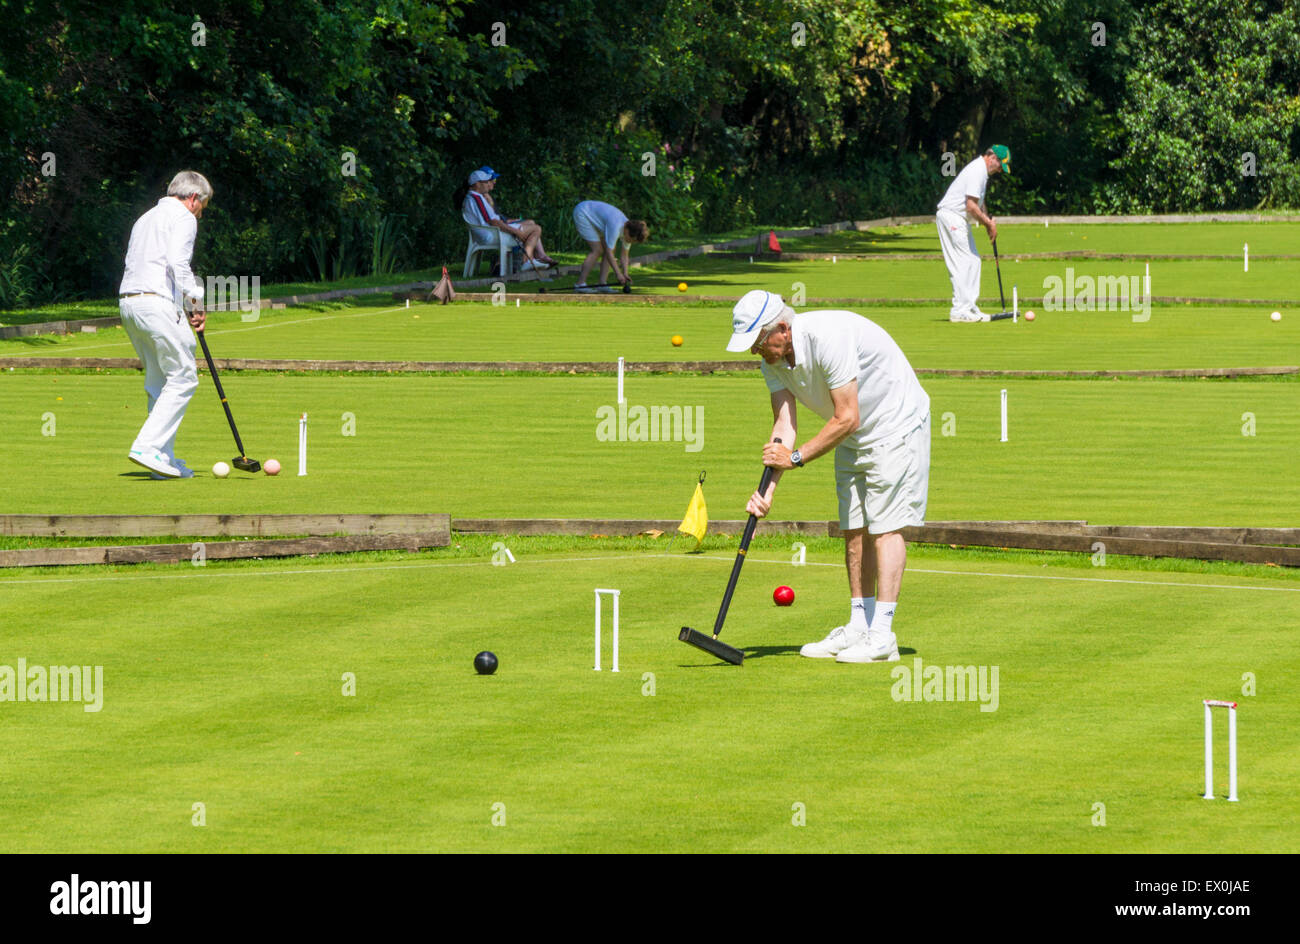 Croquet giocando al Parco Highfields Nottingham Nottinghamshire England Regno Unito GB EU Europe Foto Stock